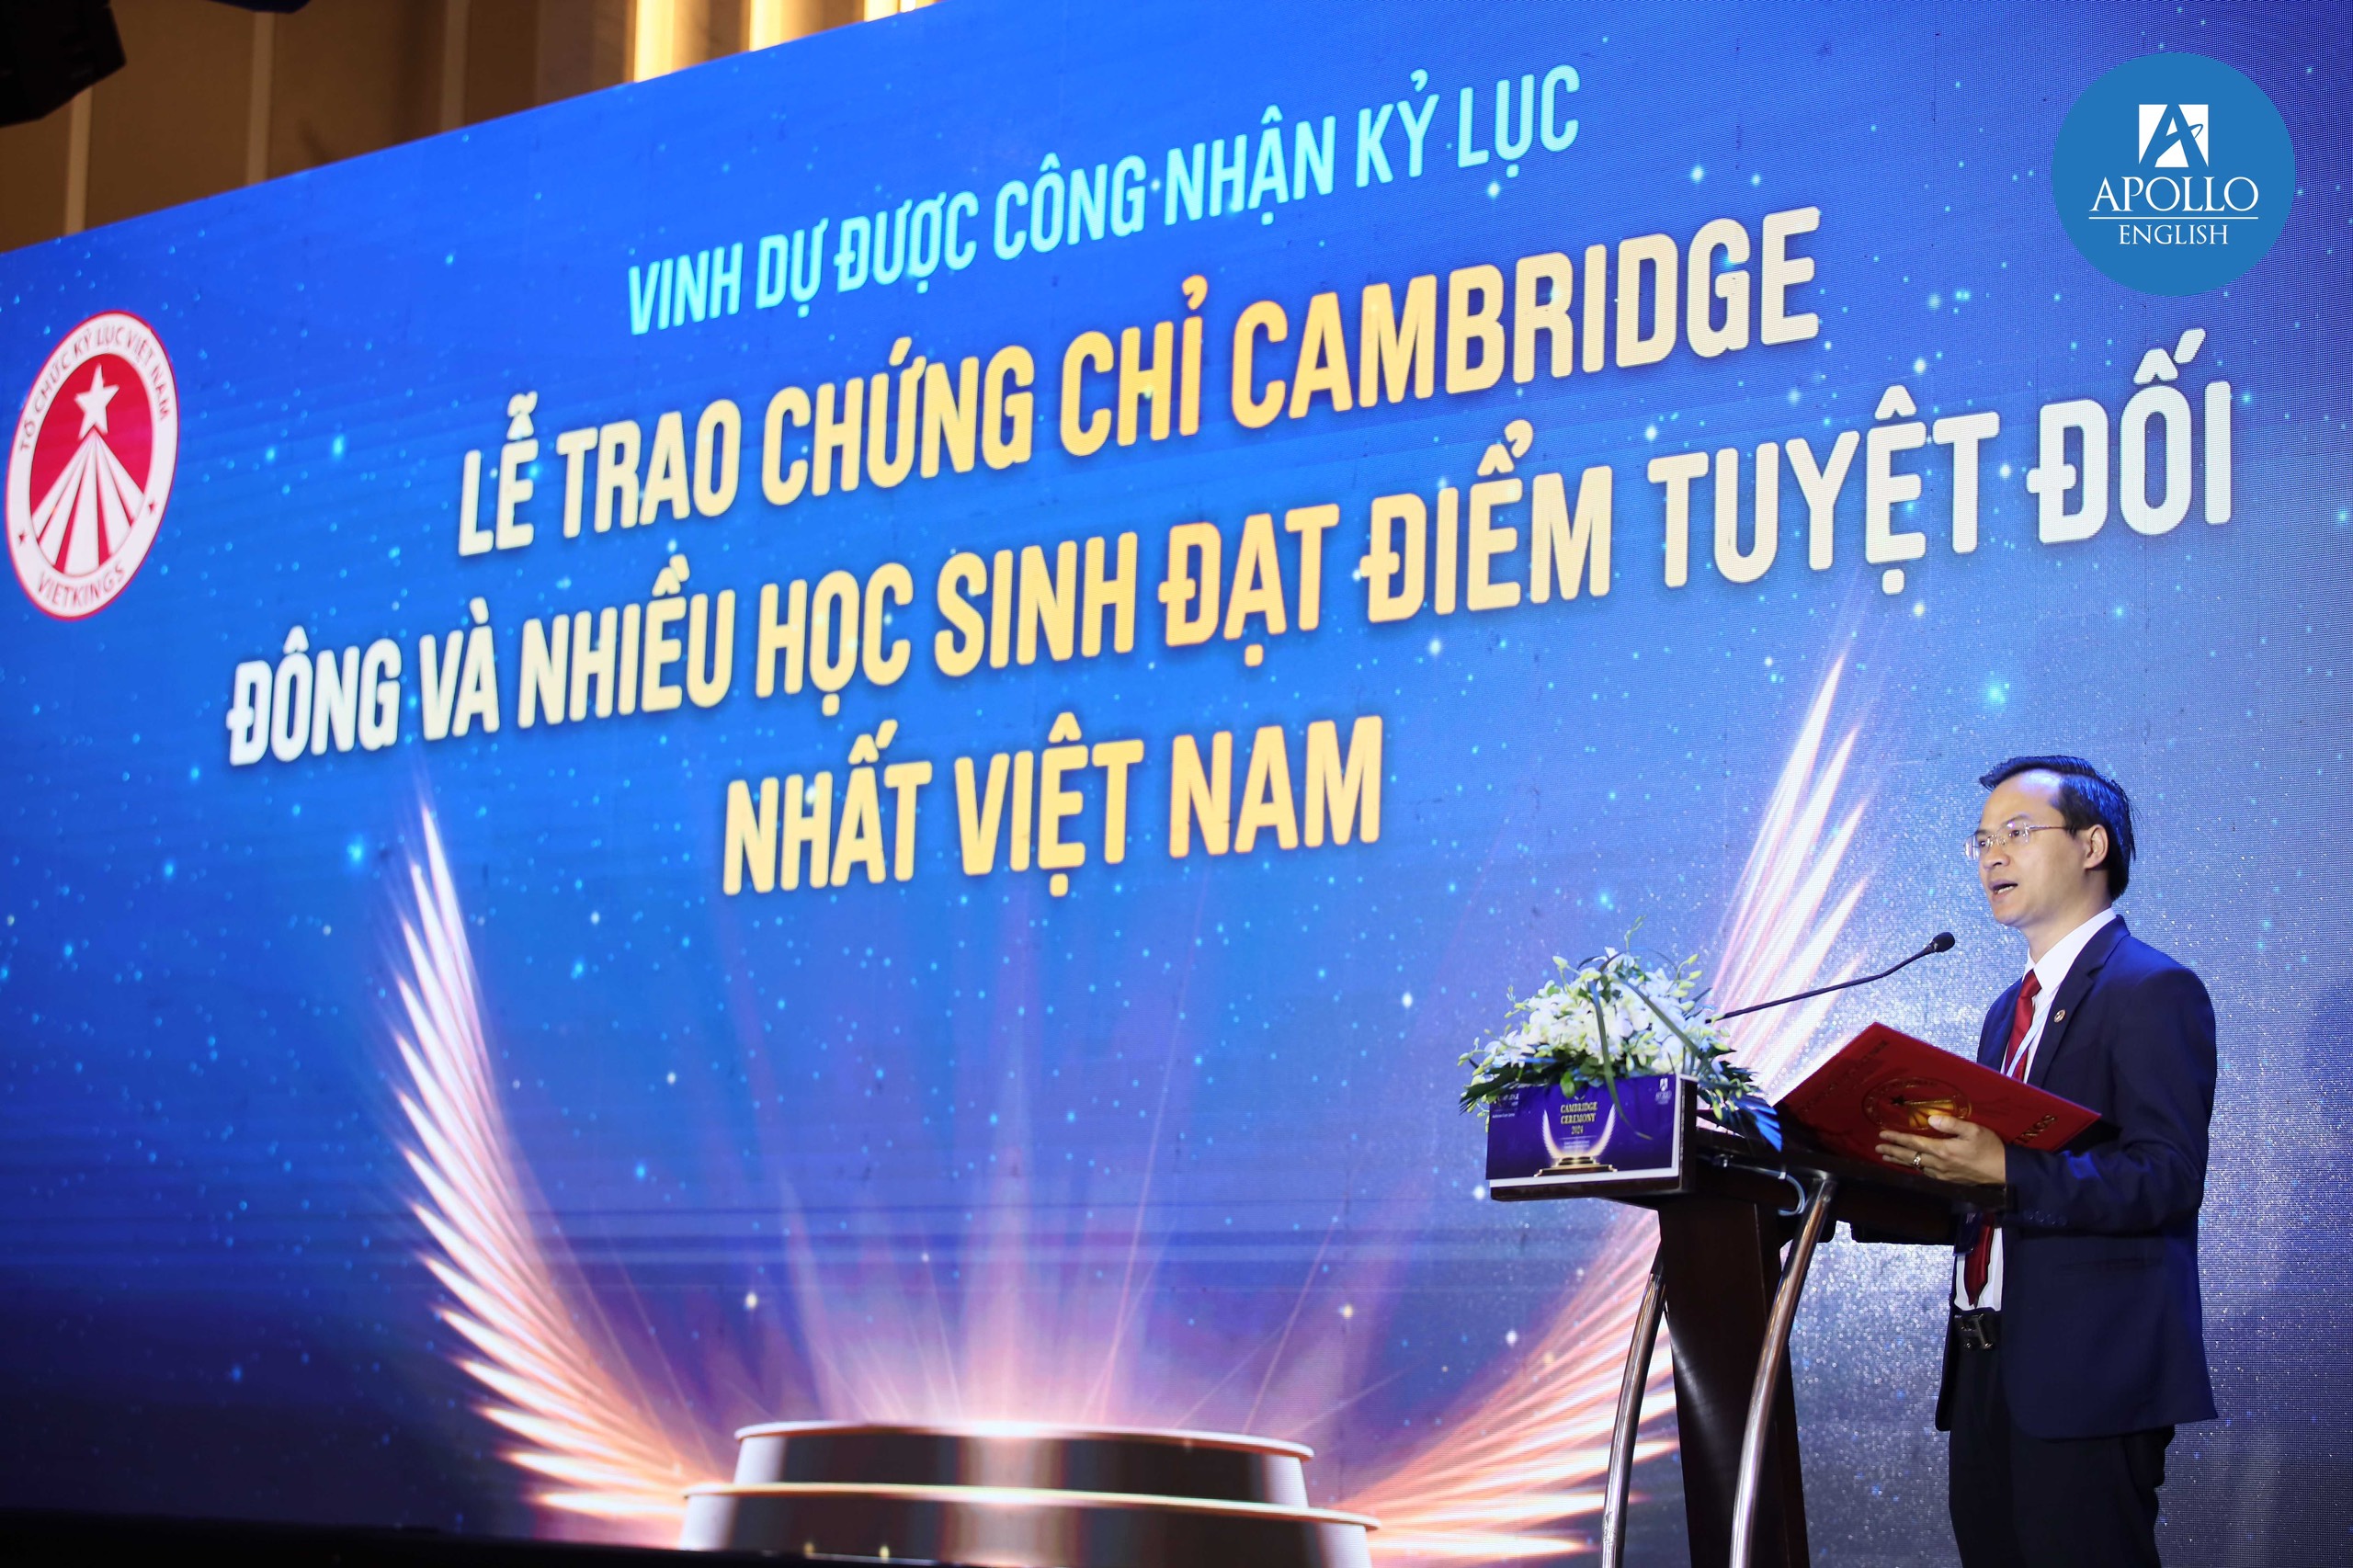 Ông Hoàng Thái Tuấn Anh - Tổng thư ký Tổ chức Kỷ lục Đông Dương, Trưởng đại diện Miền Bắc Tổ chức Kỷ lục Việt Nam đại diện công bố quyết định xác lập Kỷ lục.